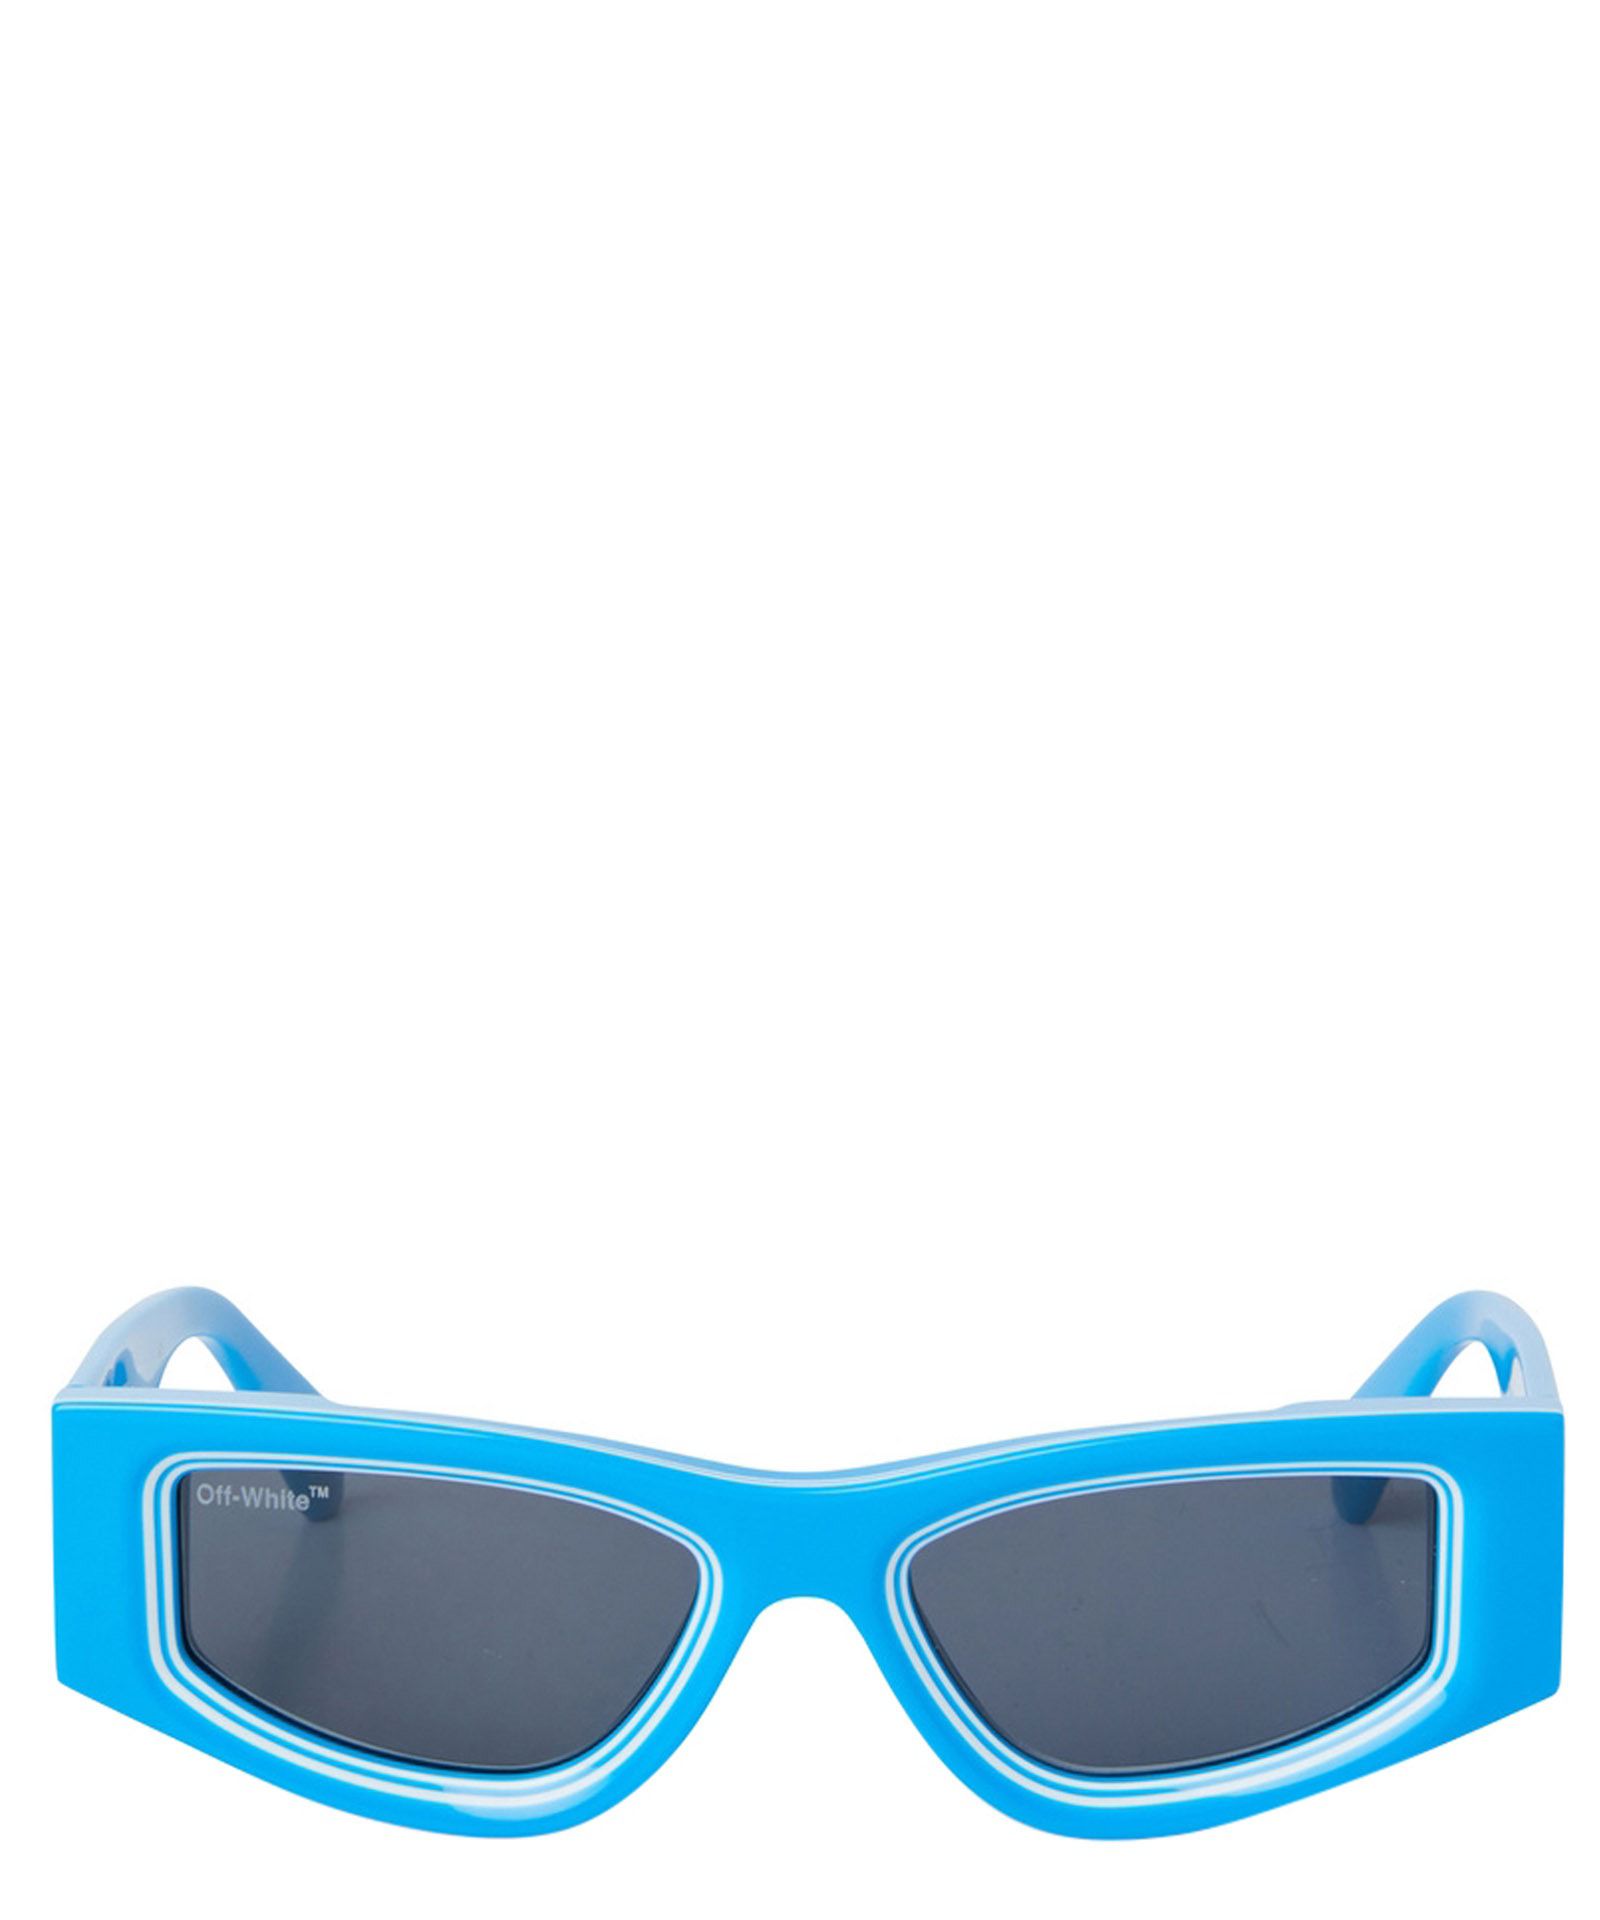 Occhiali da sole andy sunglasses - Off-White - Modalova